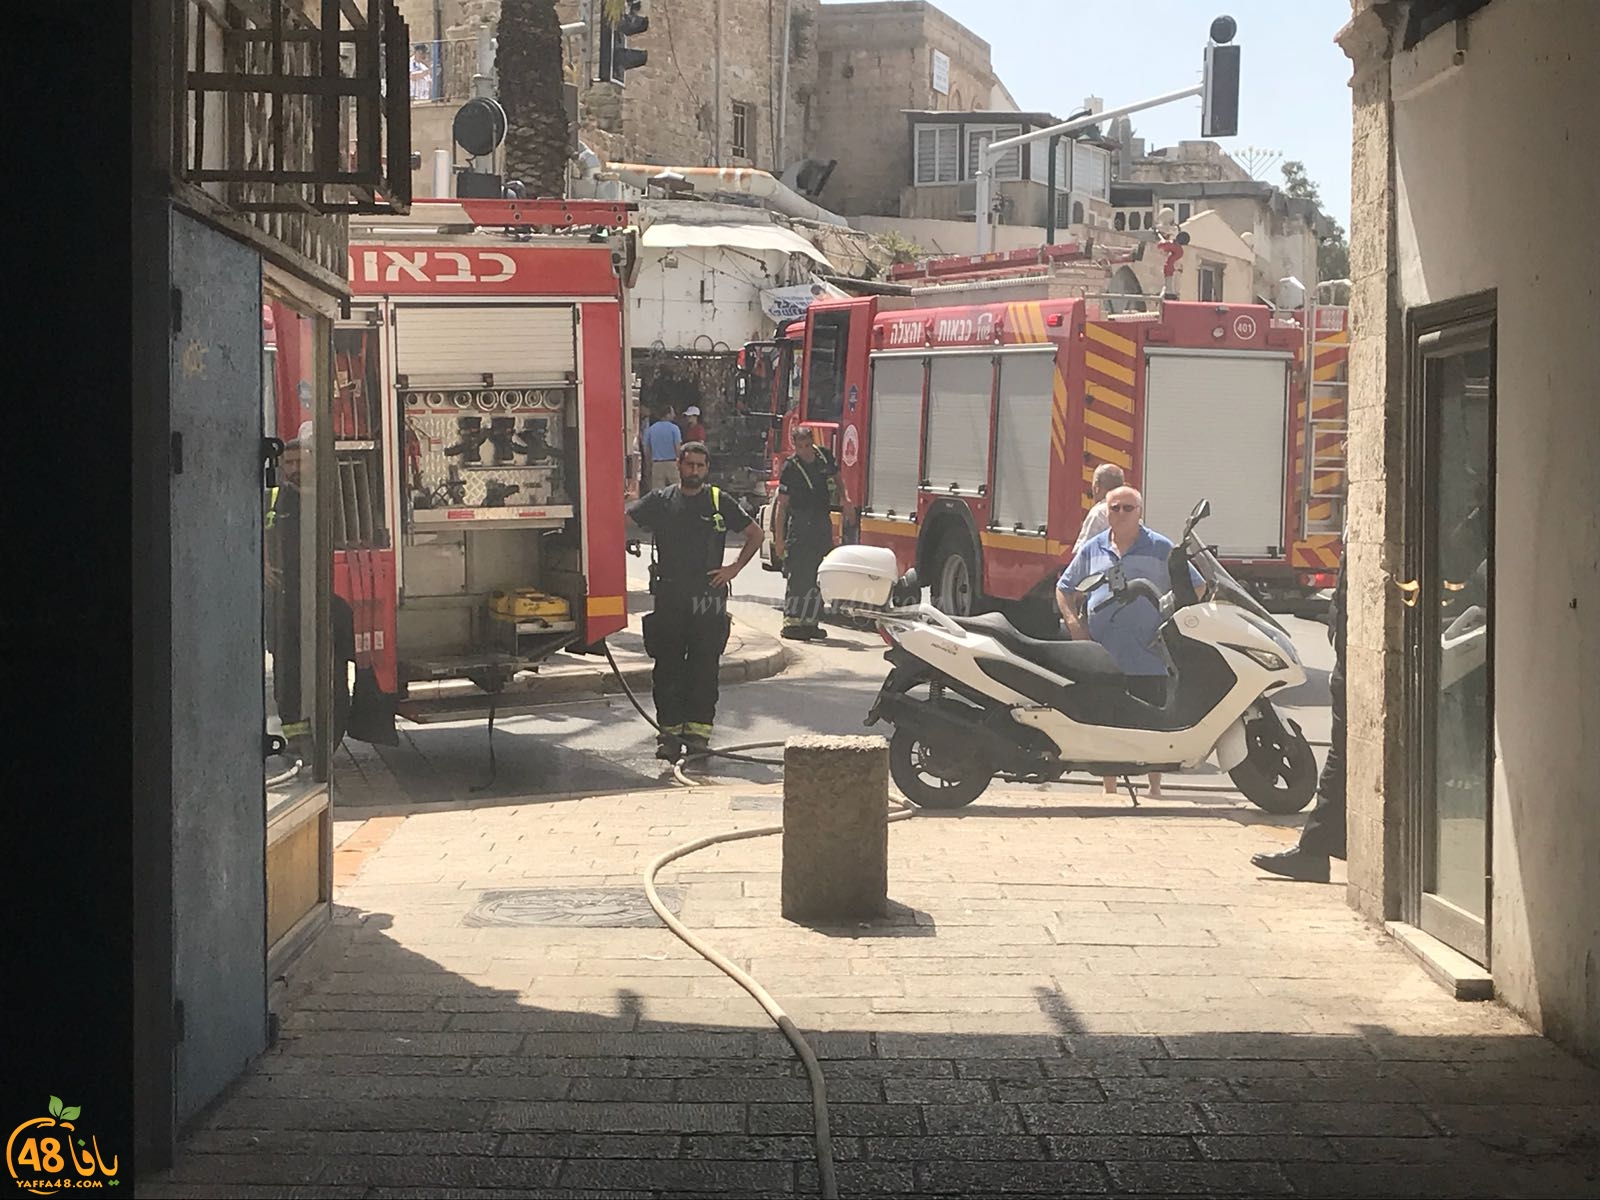   بالفيديو: إصابة طفيفة بحريق داخل محل تجاري قرب دوار الساعة بيافا 